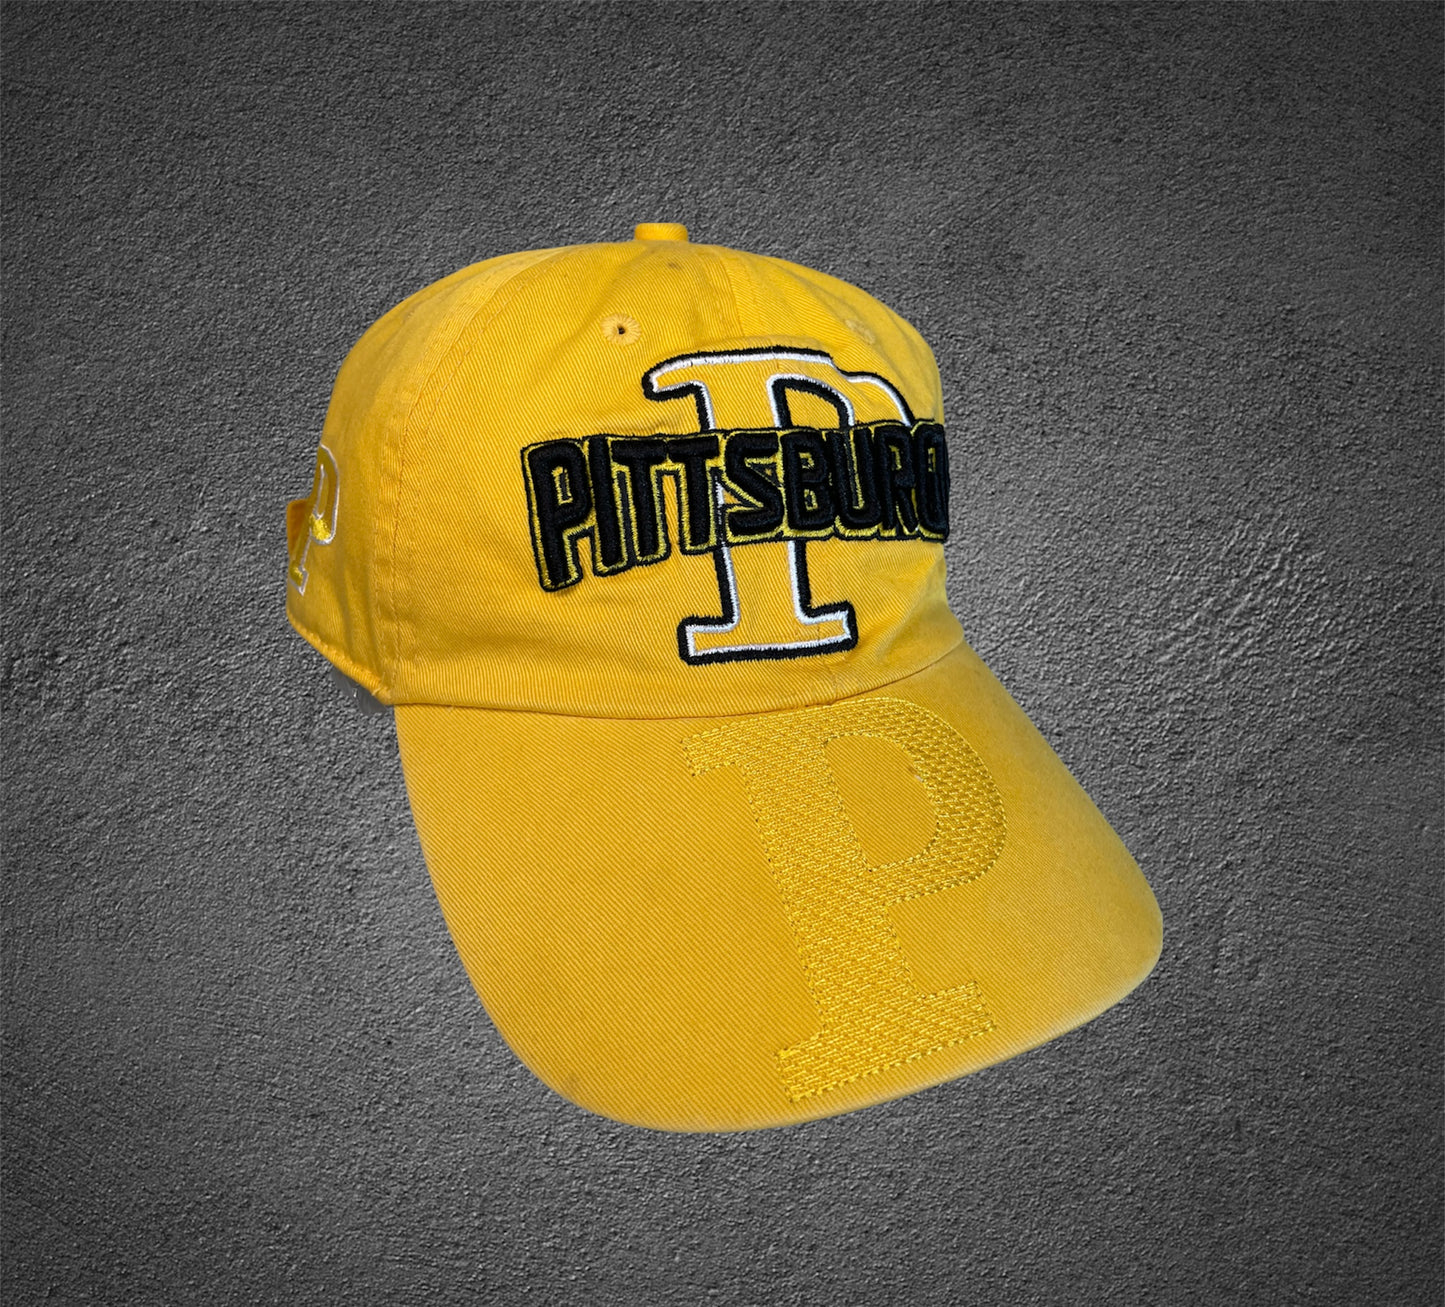 Vintage Pittsburgh Cap gelb